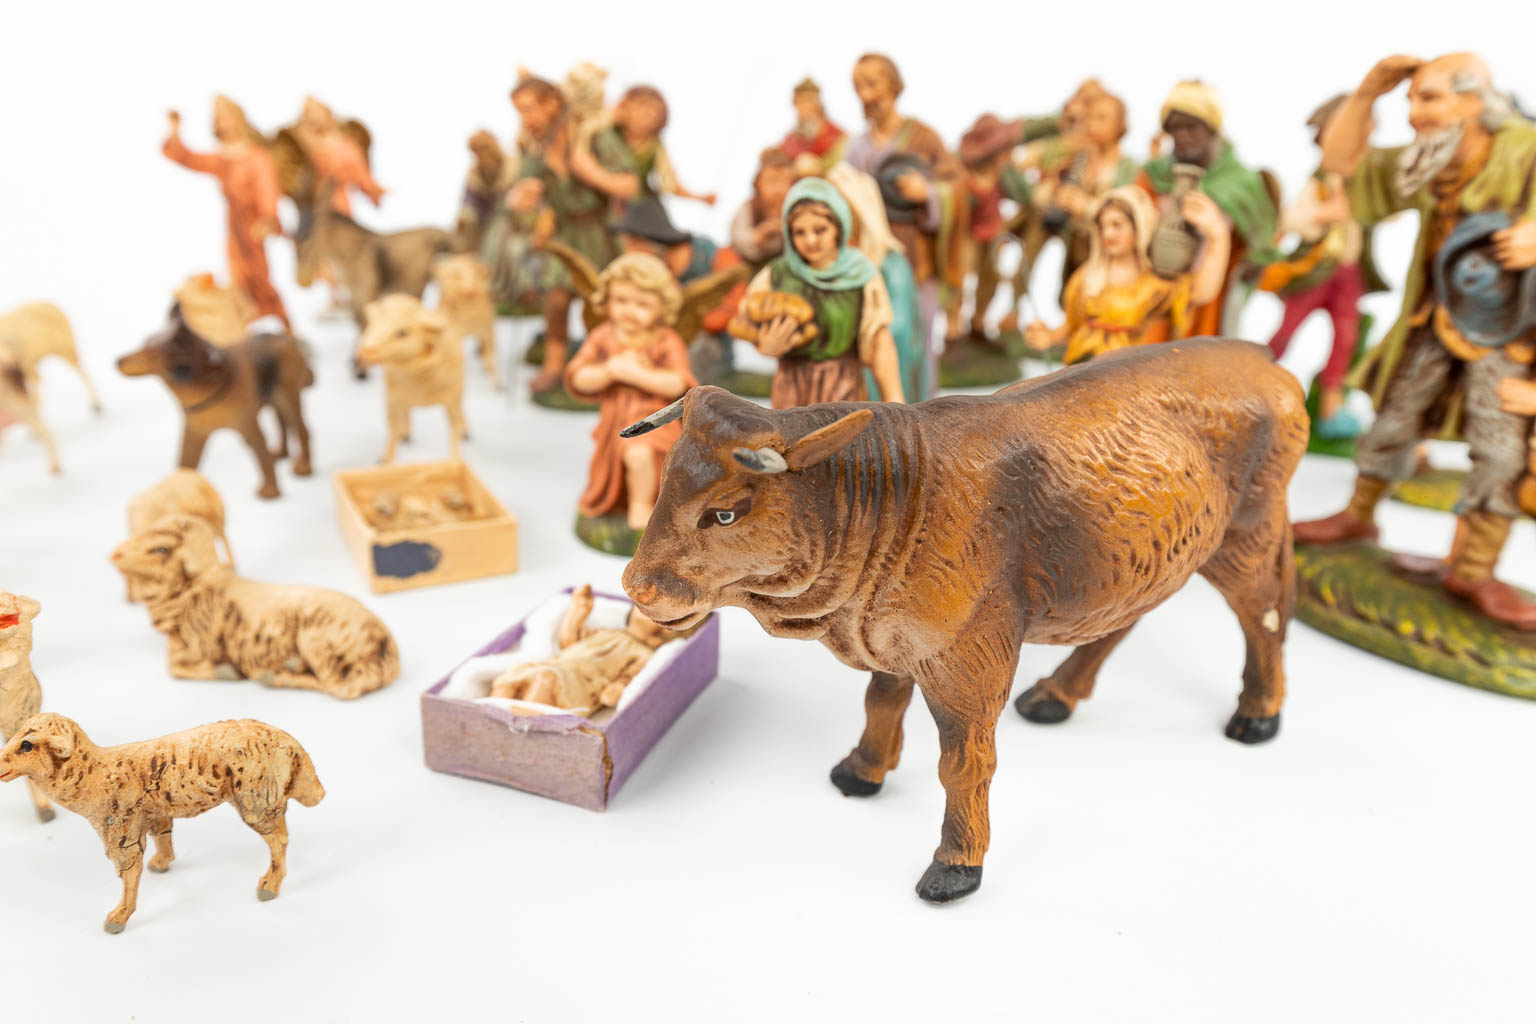 Een grote en uitgebreide kerststal met figuren en dieren gemaakt uit papier maché. 